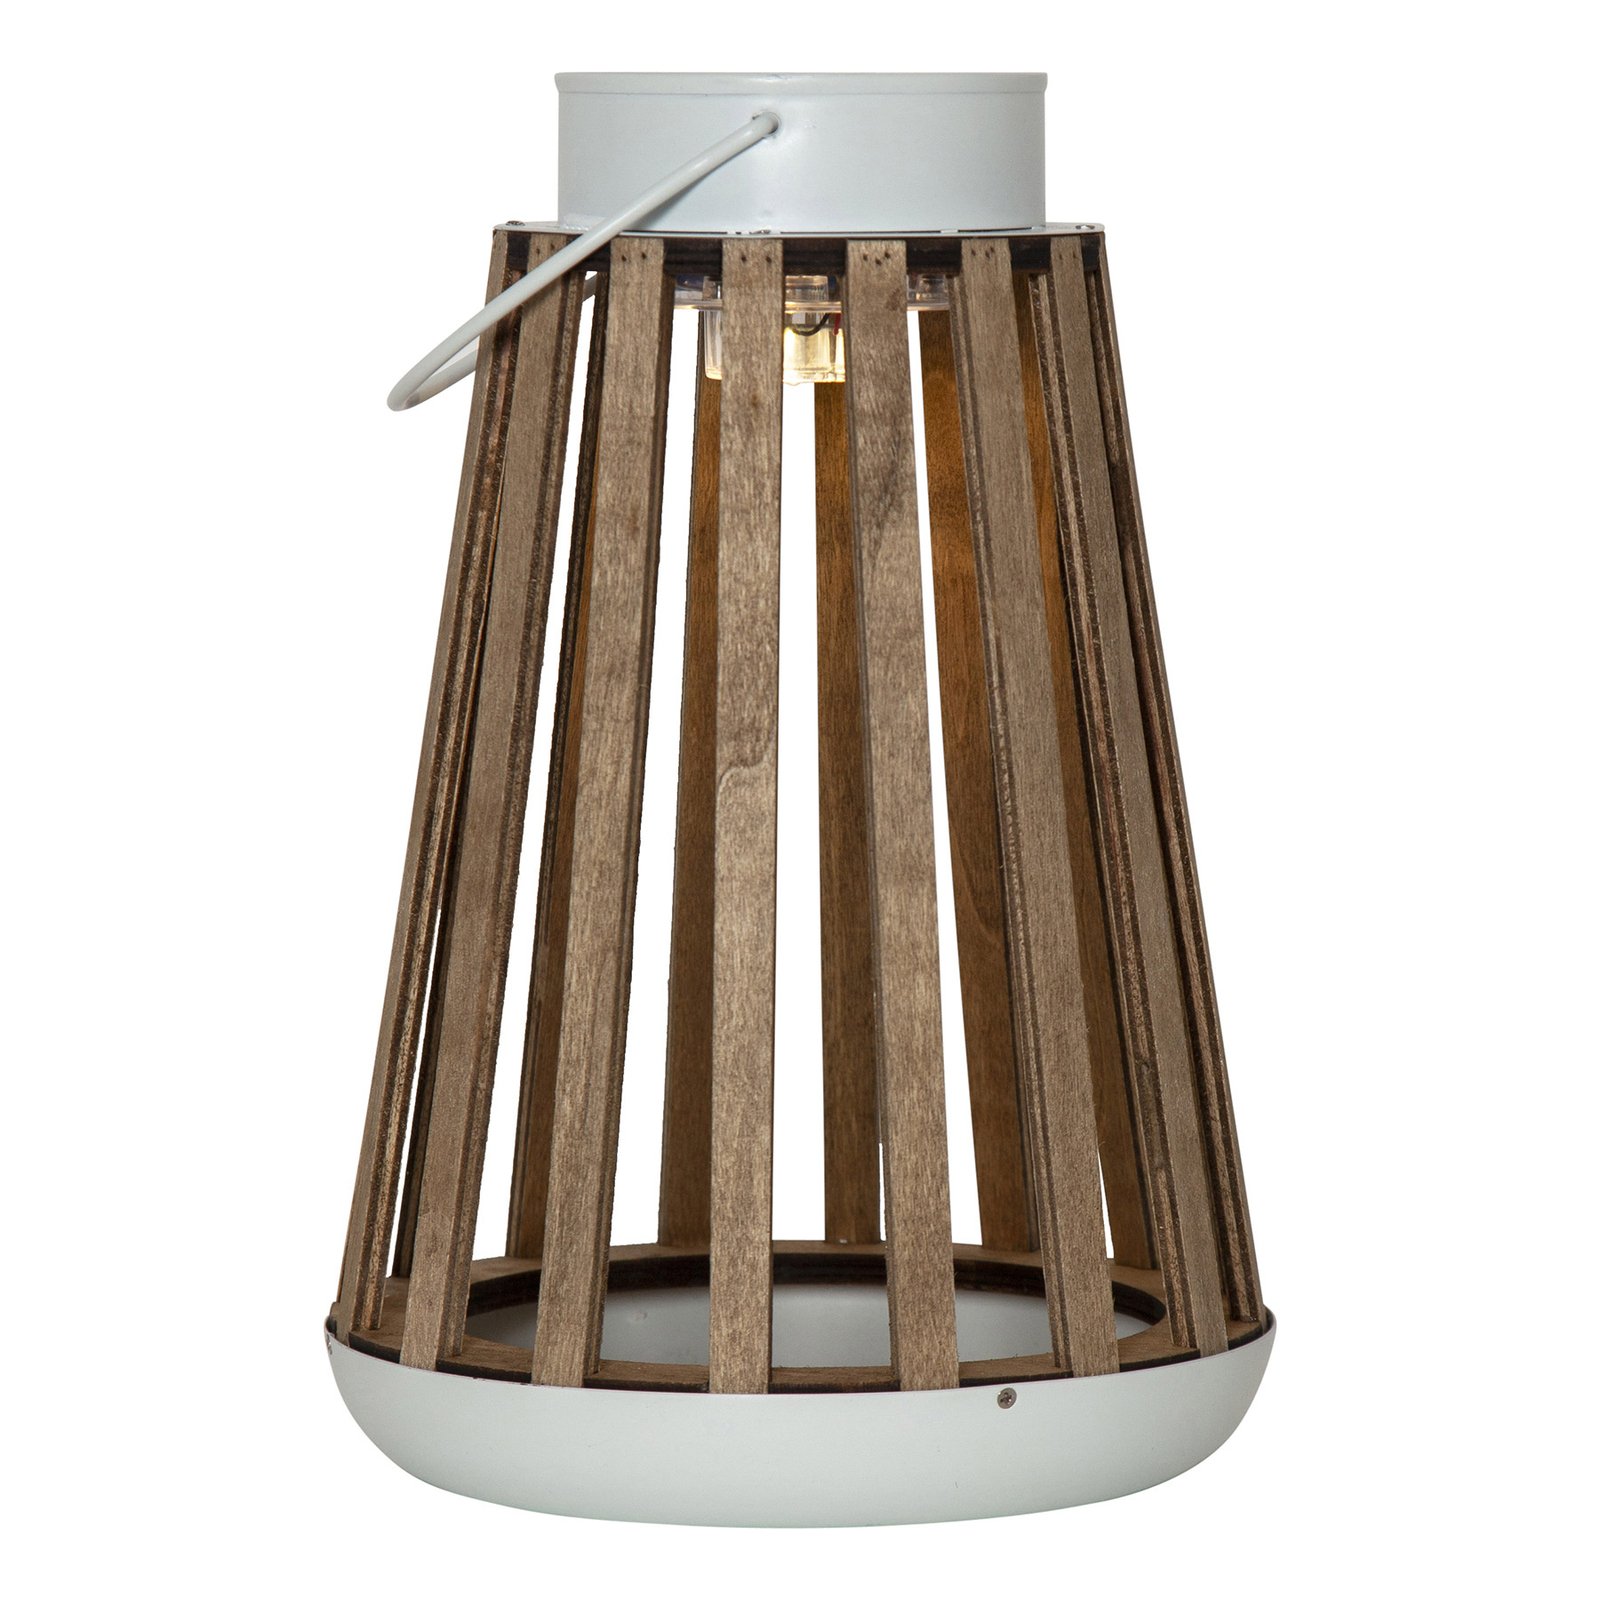 LED solární stolní lampa Catania z březového dřeva